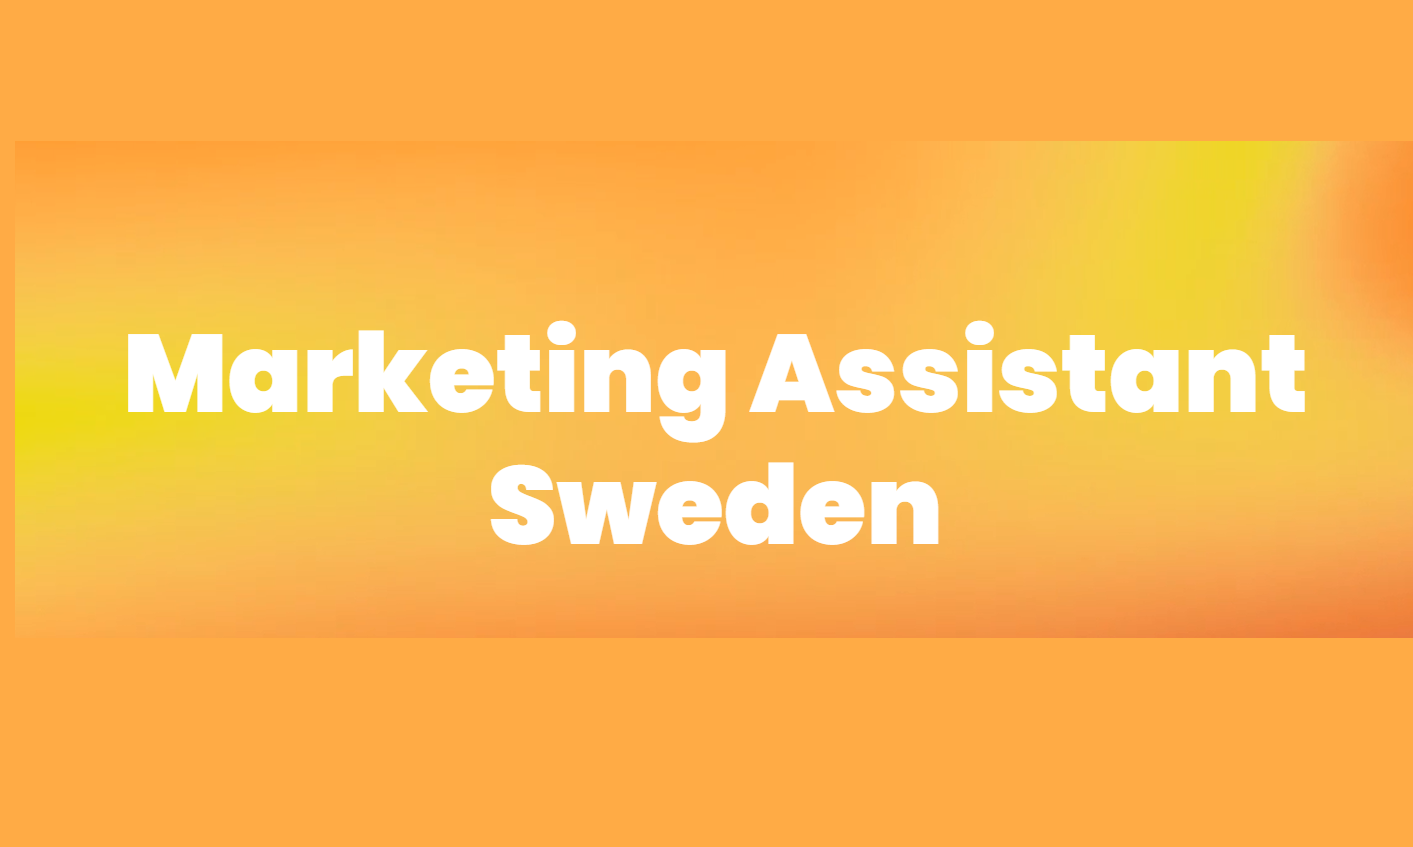 Marketing Assistant Sweden